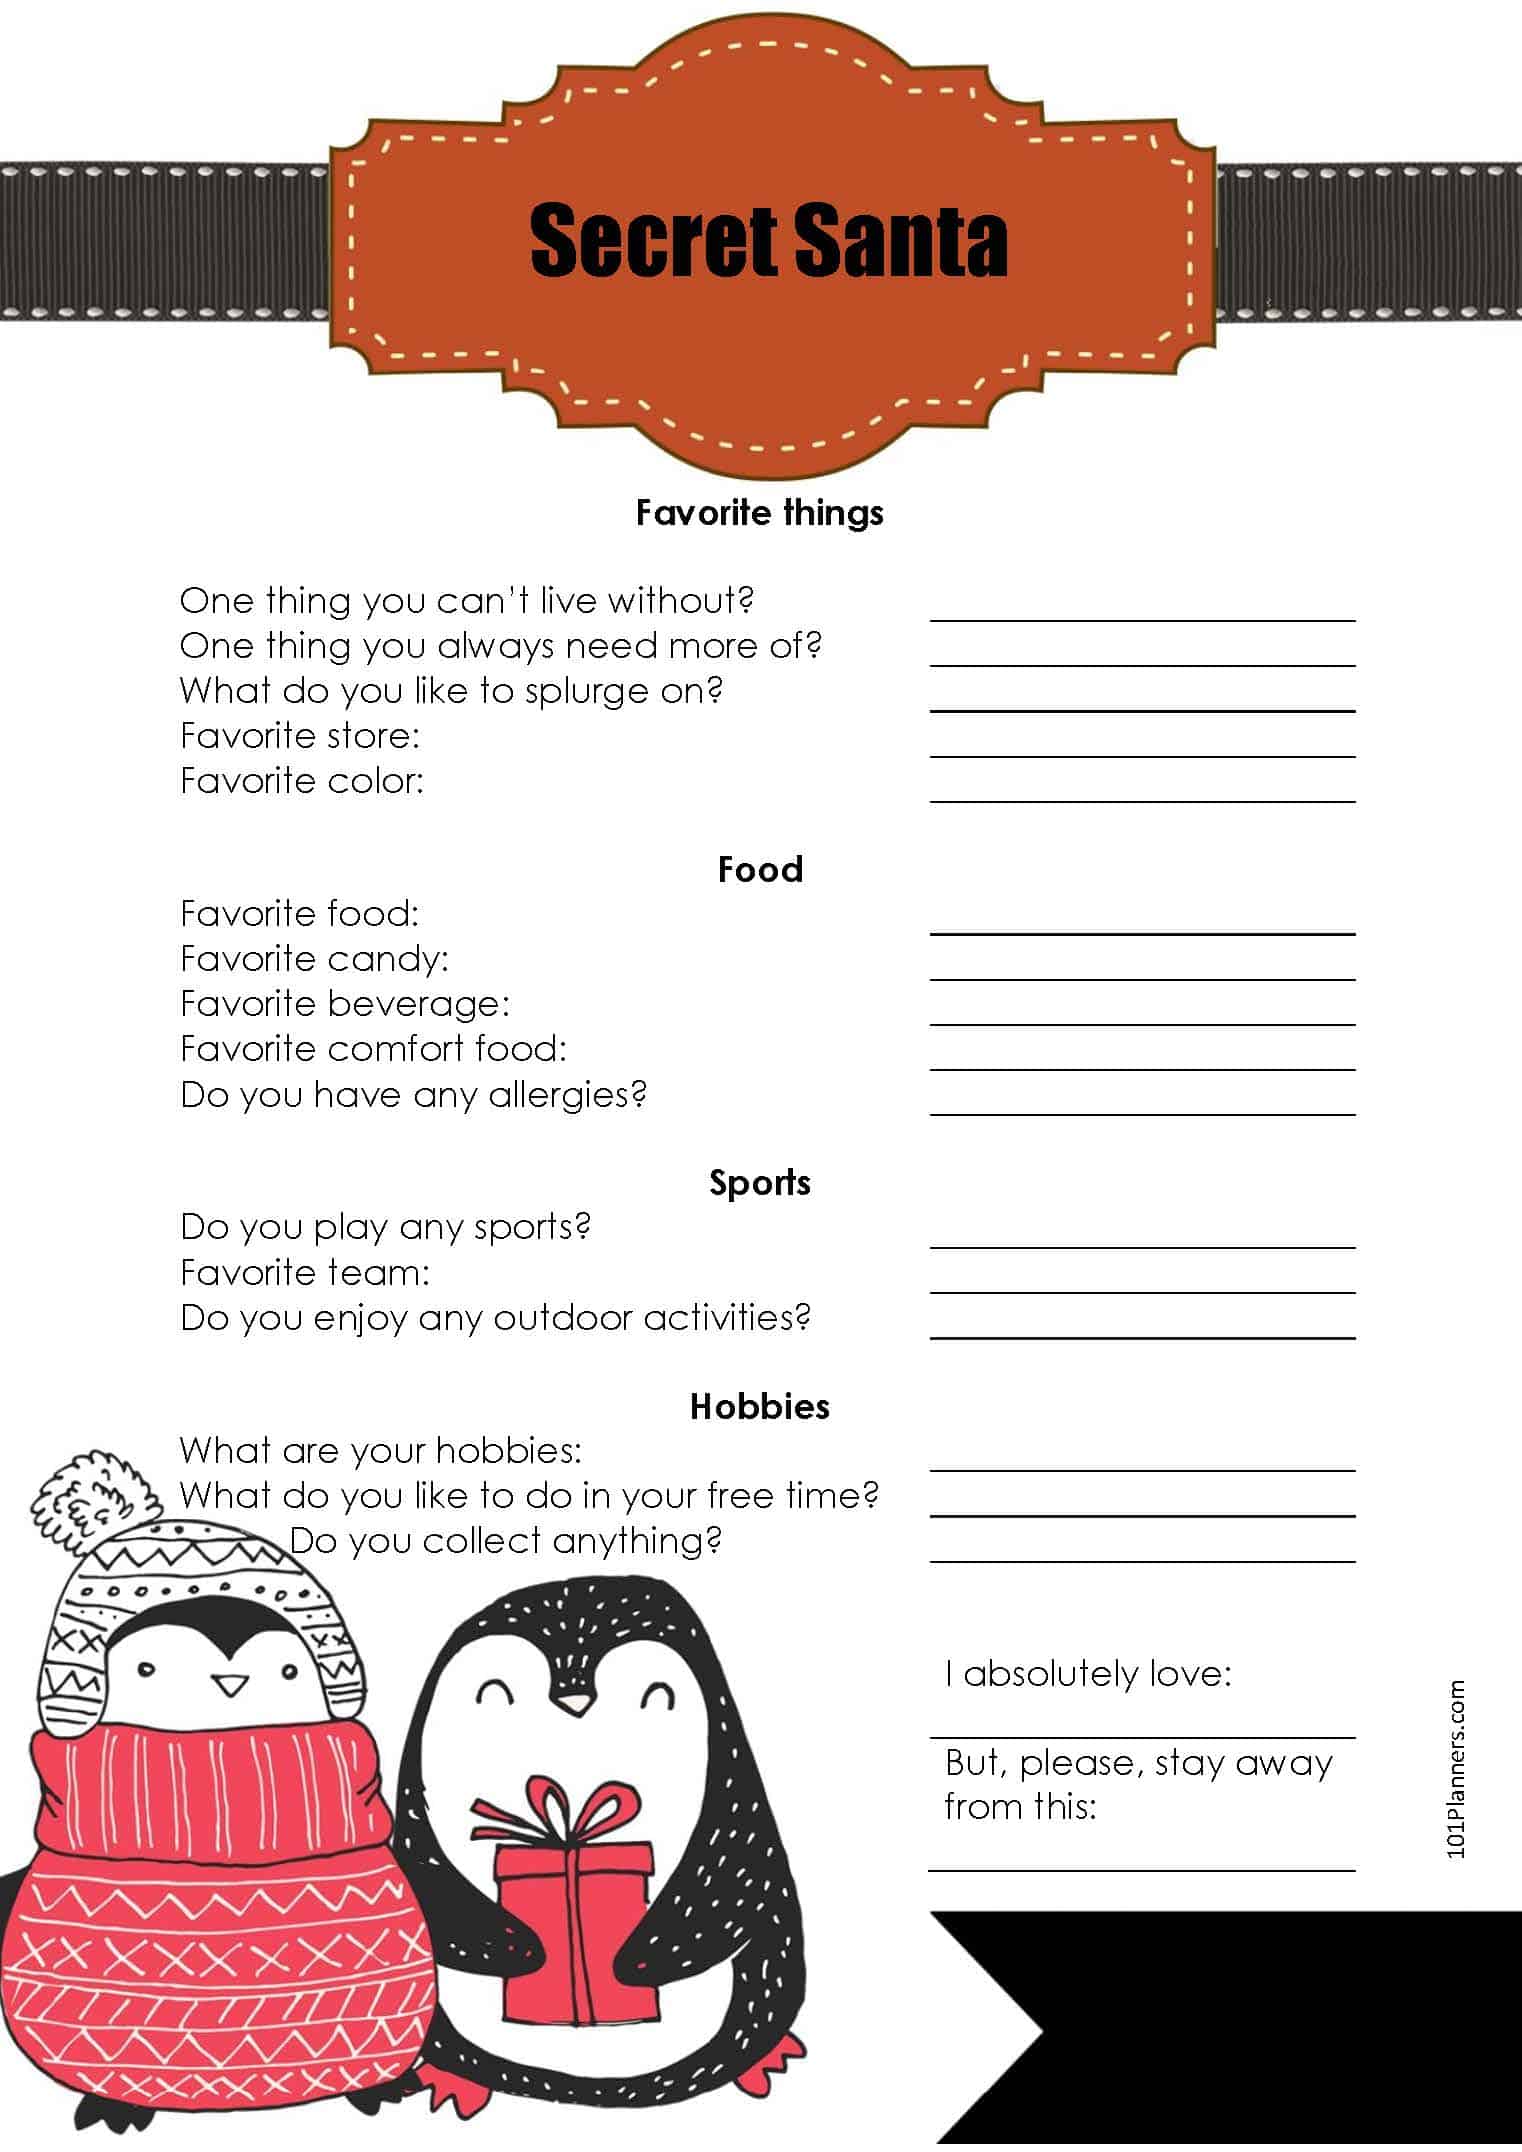 Secret Santa Questionnaire Printable Customize and Print